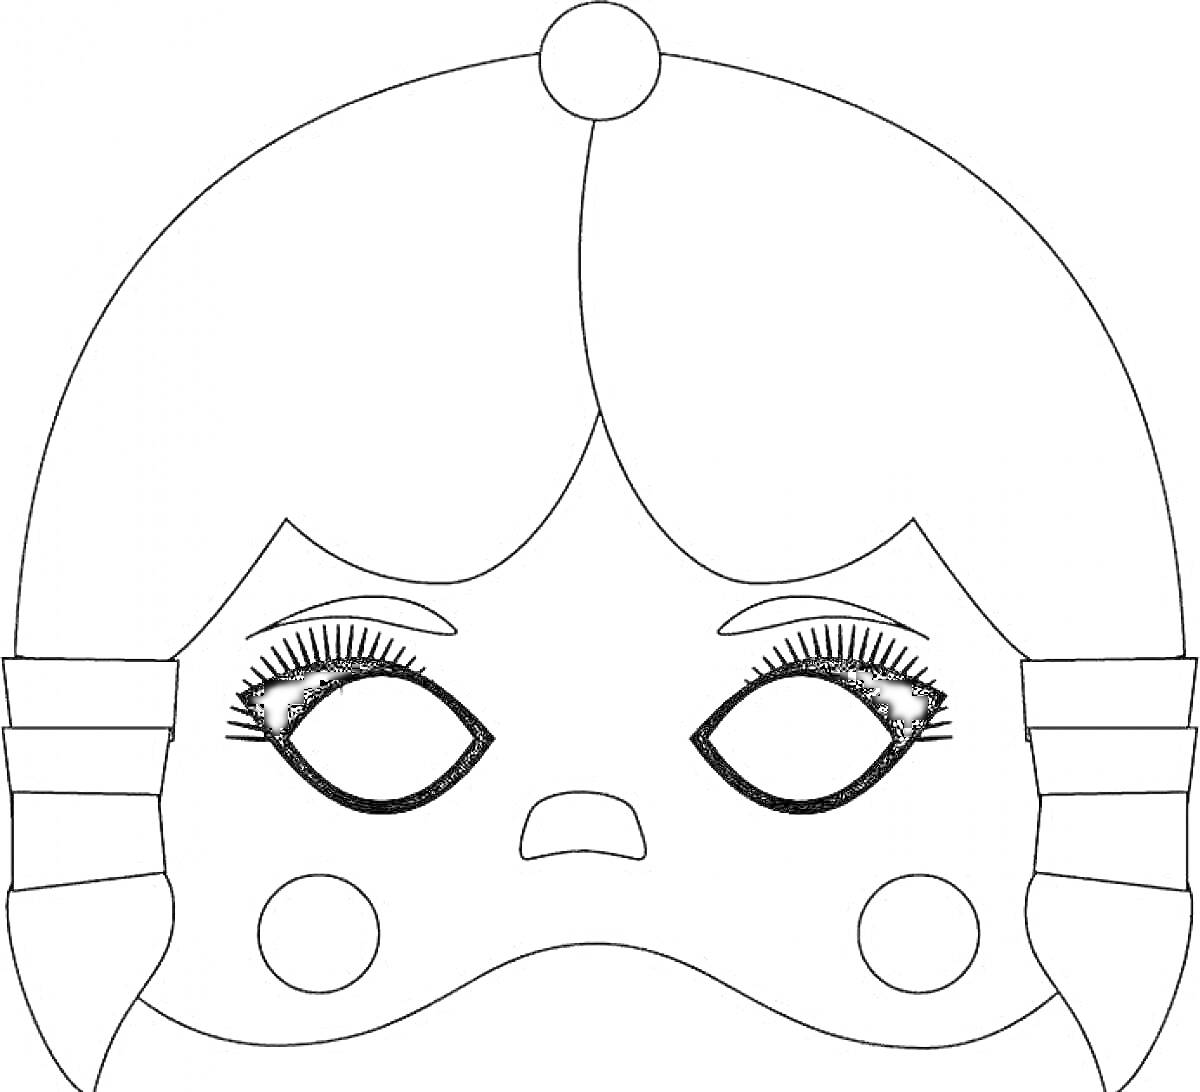 Раскраска маска для лица с кукольными глазами, ресницами, и щеками с румянцем